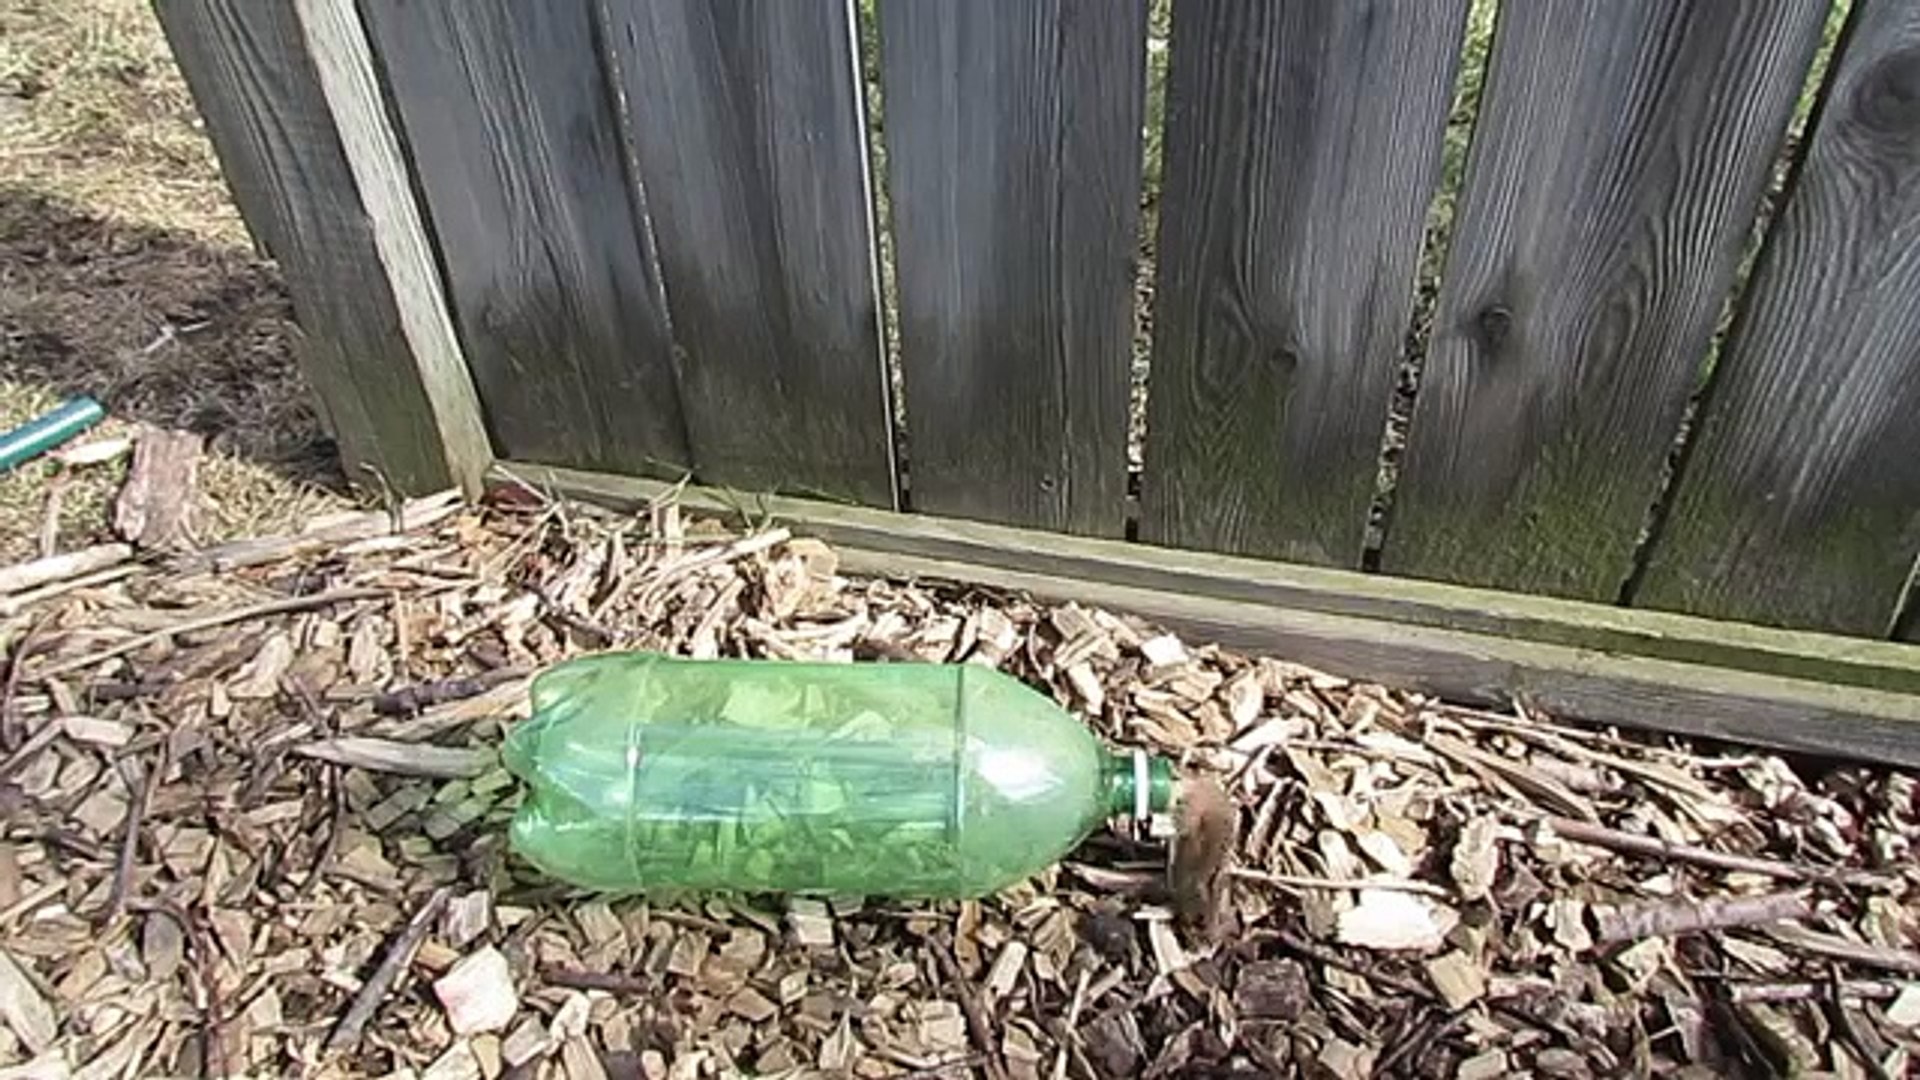 Piège à souris avec une bouteille en plastique - Vidéo Dailymotion